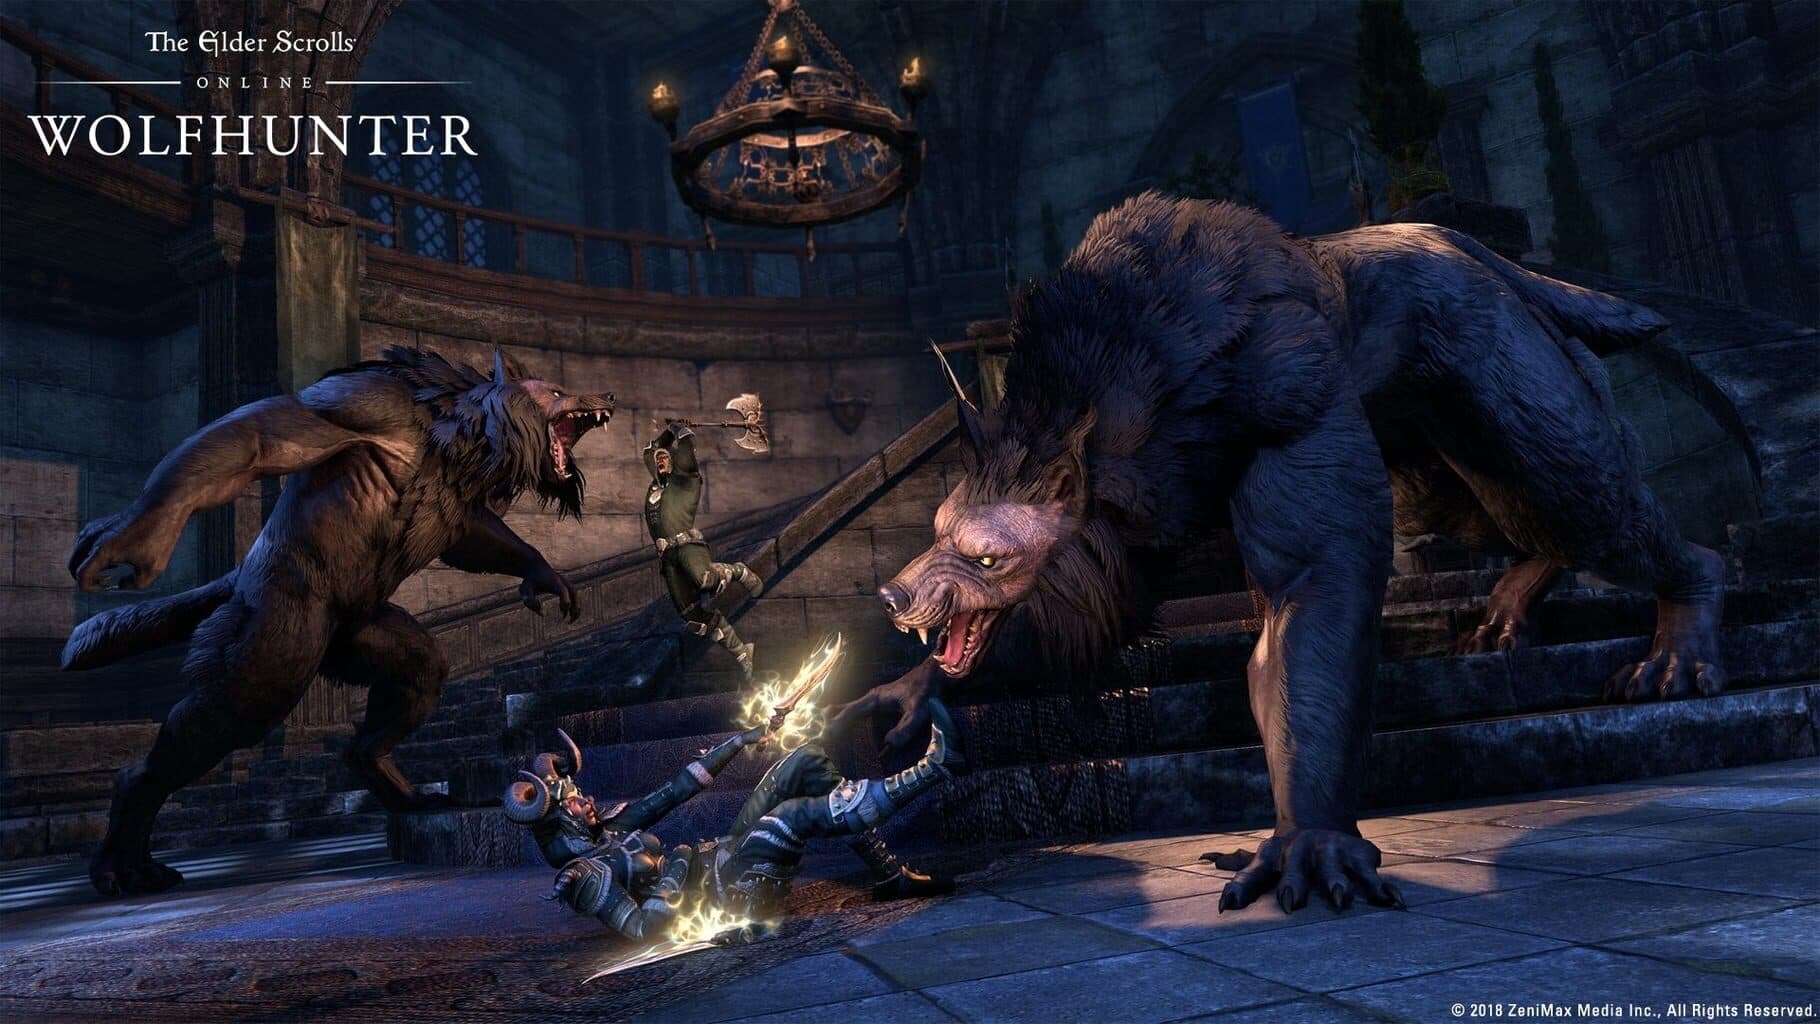 The Elder Scrolls Online: Wolfhunter Image